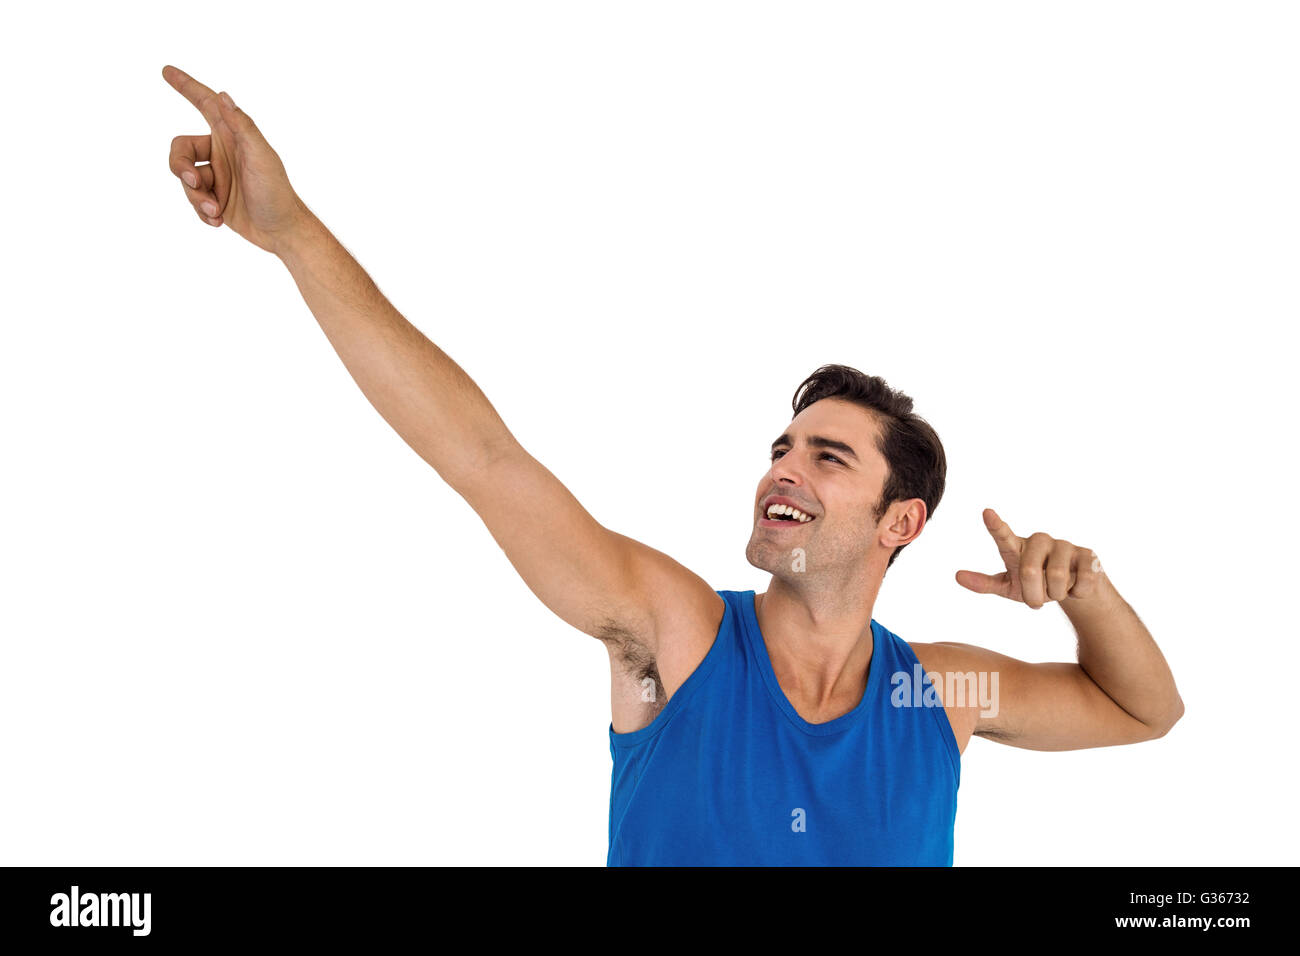 Männlicher Athlet posiert auf weißem Hintergrund Stockfoto